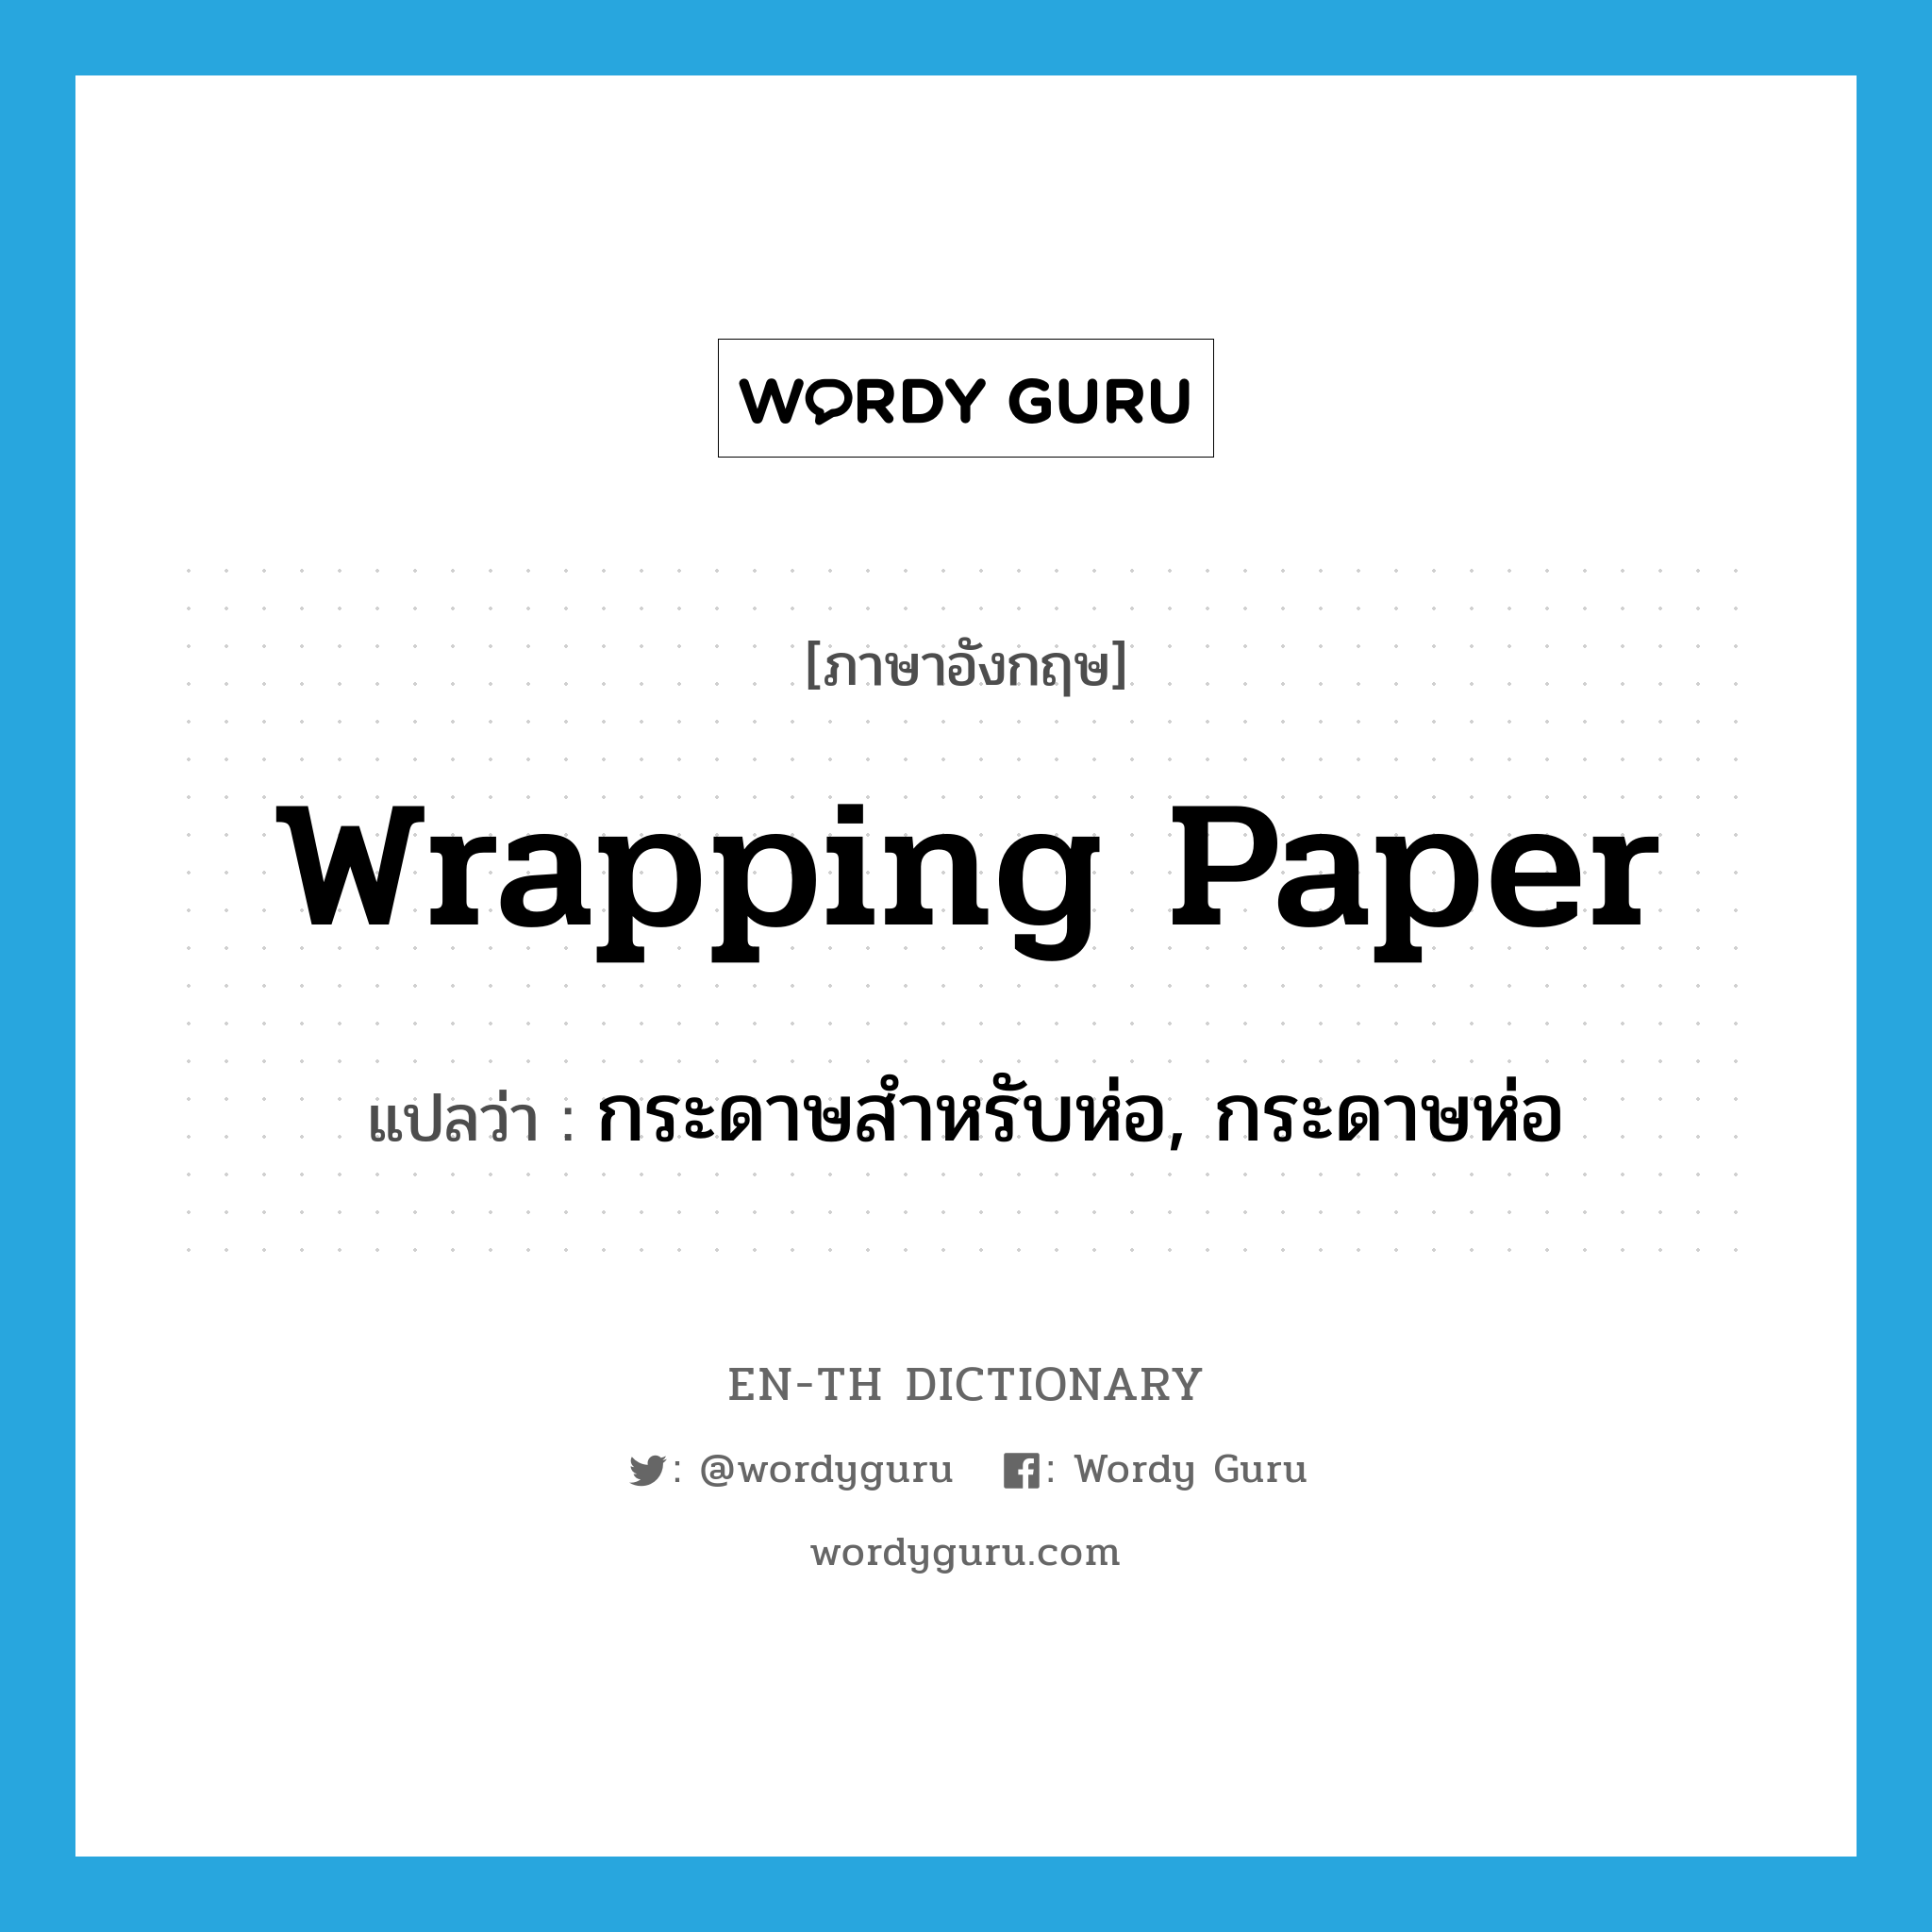 กระดาษสำหรับห่อ, กระดาษห่อ ภาษาอังกฤษ?, คำศัพท์ภาษาอังกฤษ กระดาษสำหรับห่อ, กระดาษห่อ แปลว่า wrapping paper ประเภท N หมวด N